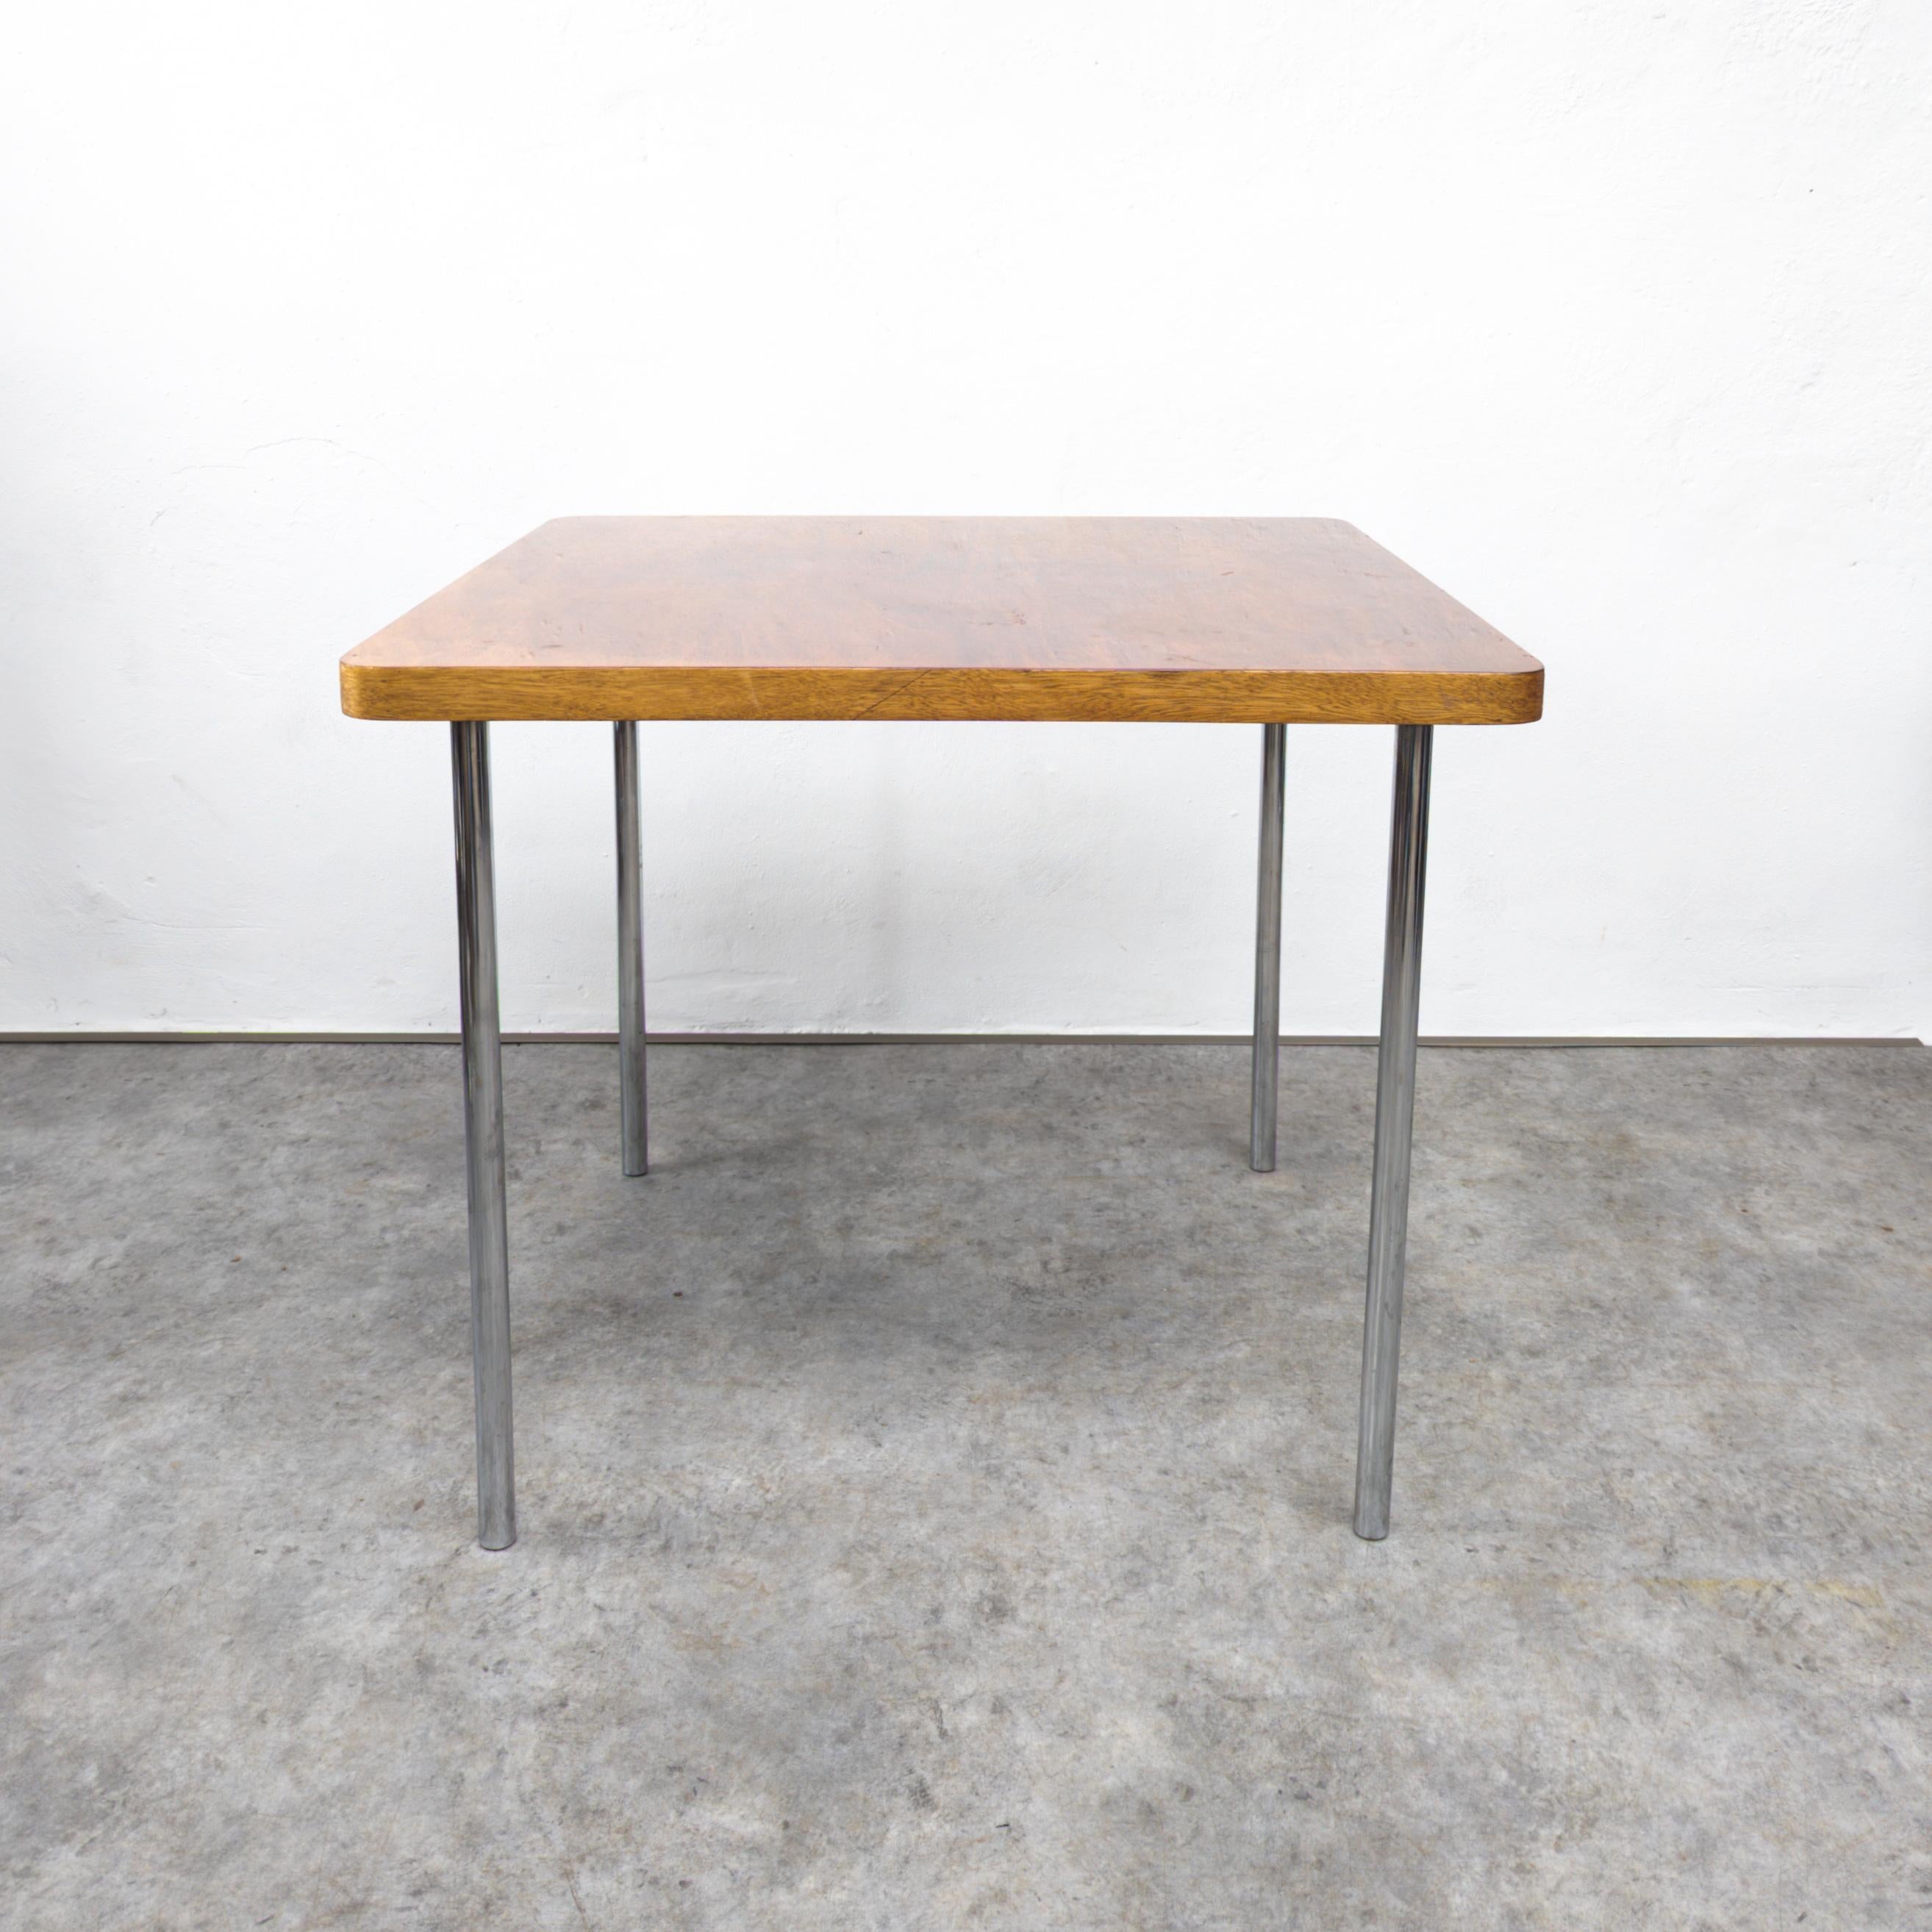 La table Thonet B 14, conçue par Marcel Breuer, est un meuble classique connu pour son utilisation innovante de l'acier tubulaire et des formes géométriques. Il présente un plateau en bois carré soutenu par des pieds droits en acier chromé, créant